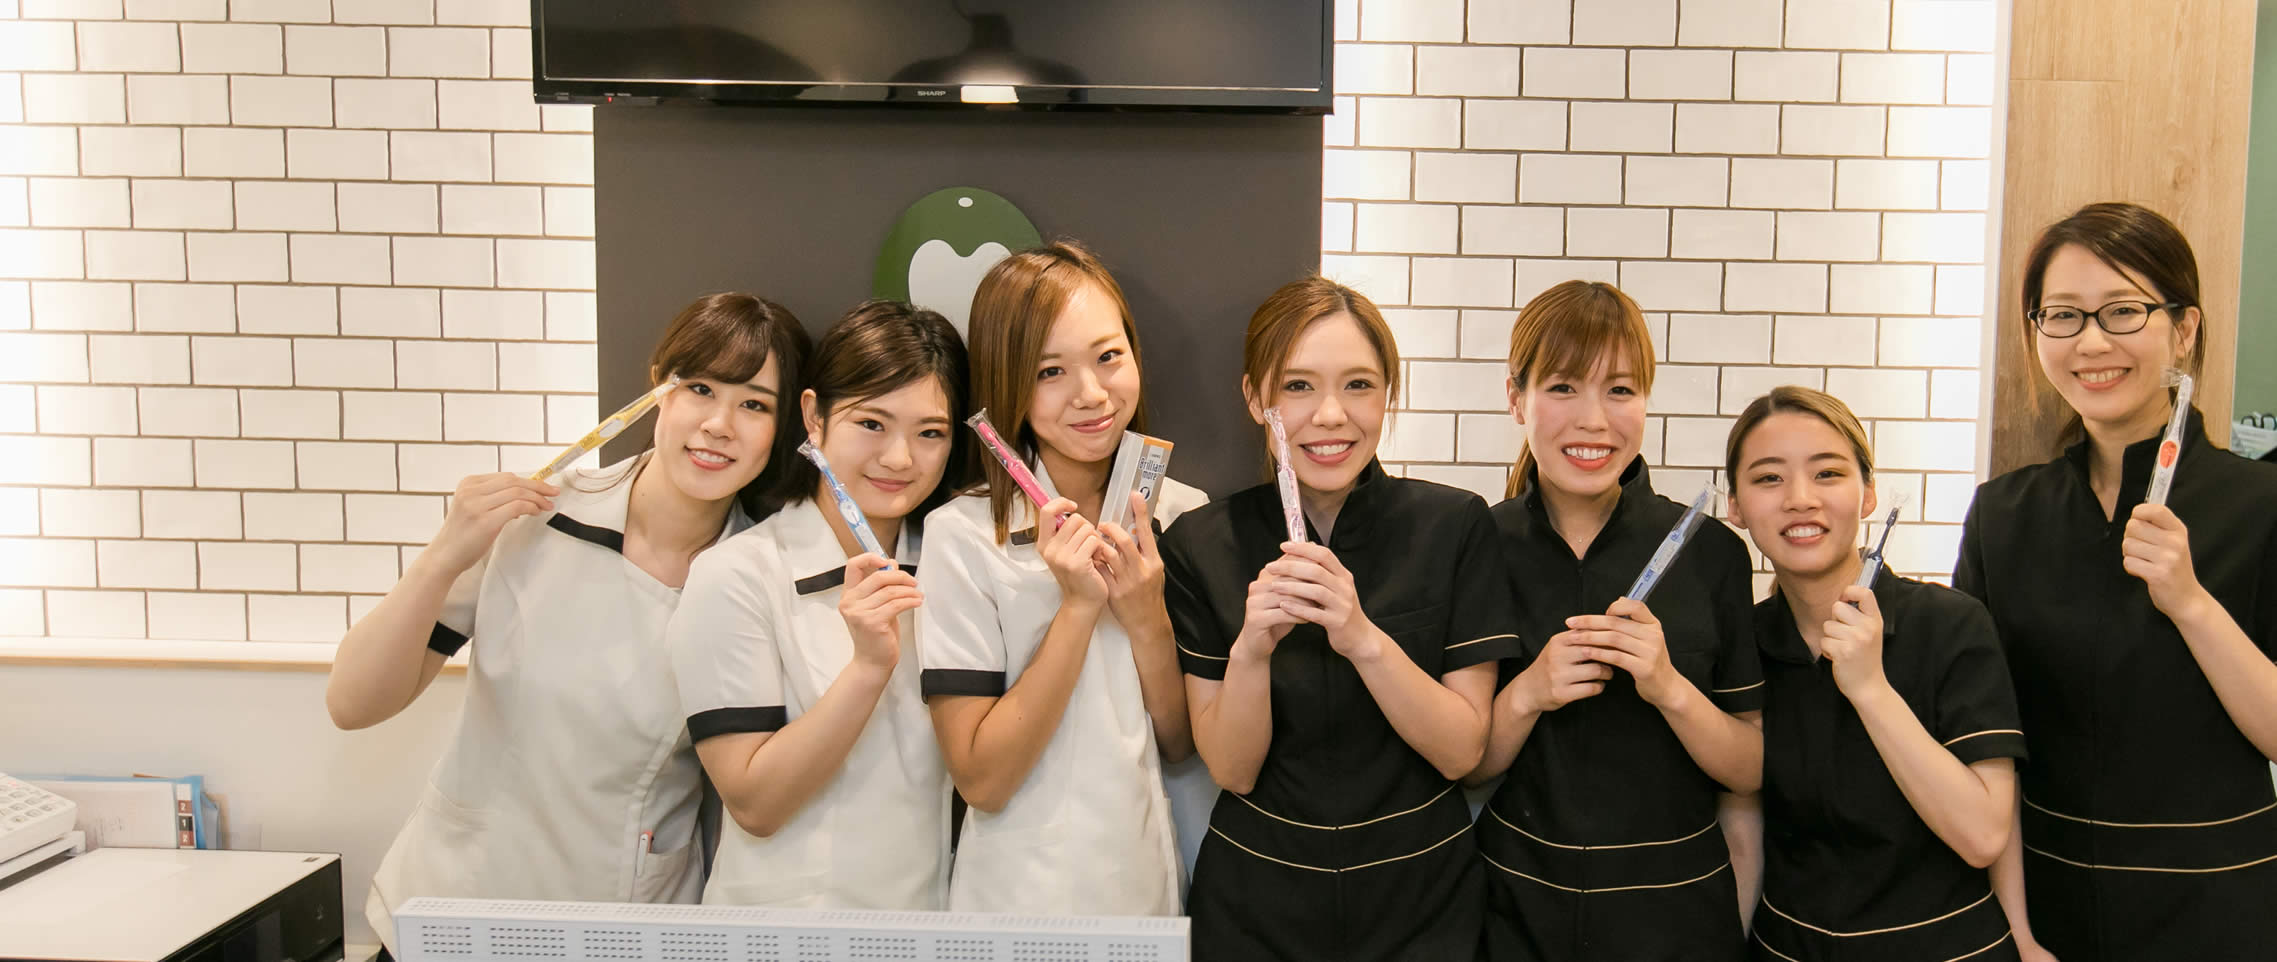 歯科衛生士の求人(採用)募集 | 神戸市垂水区の歯医者オリーブ歯科